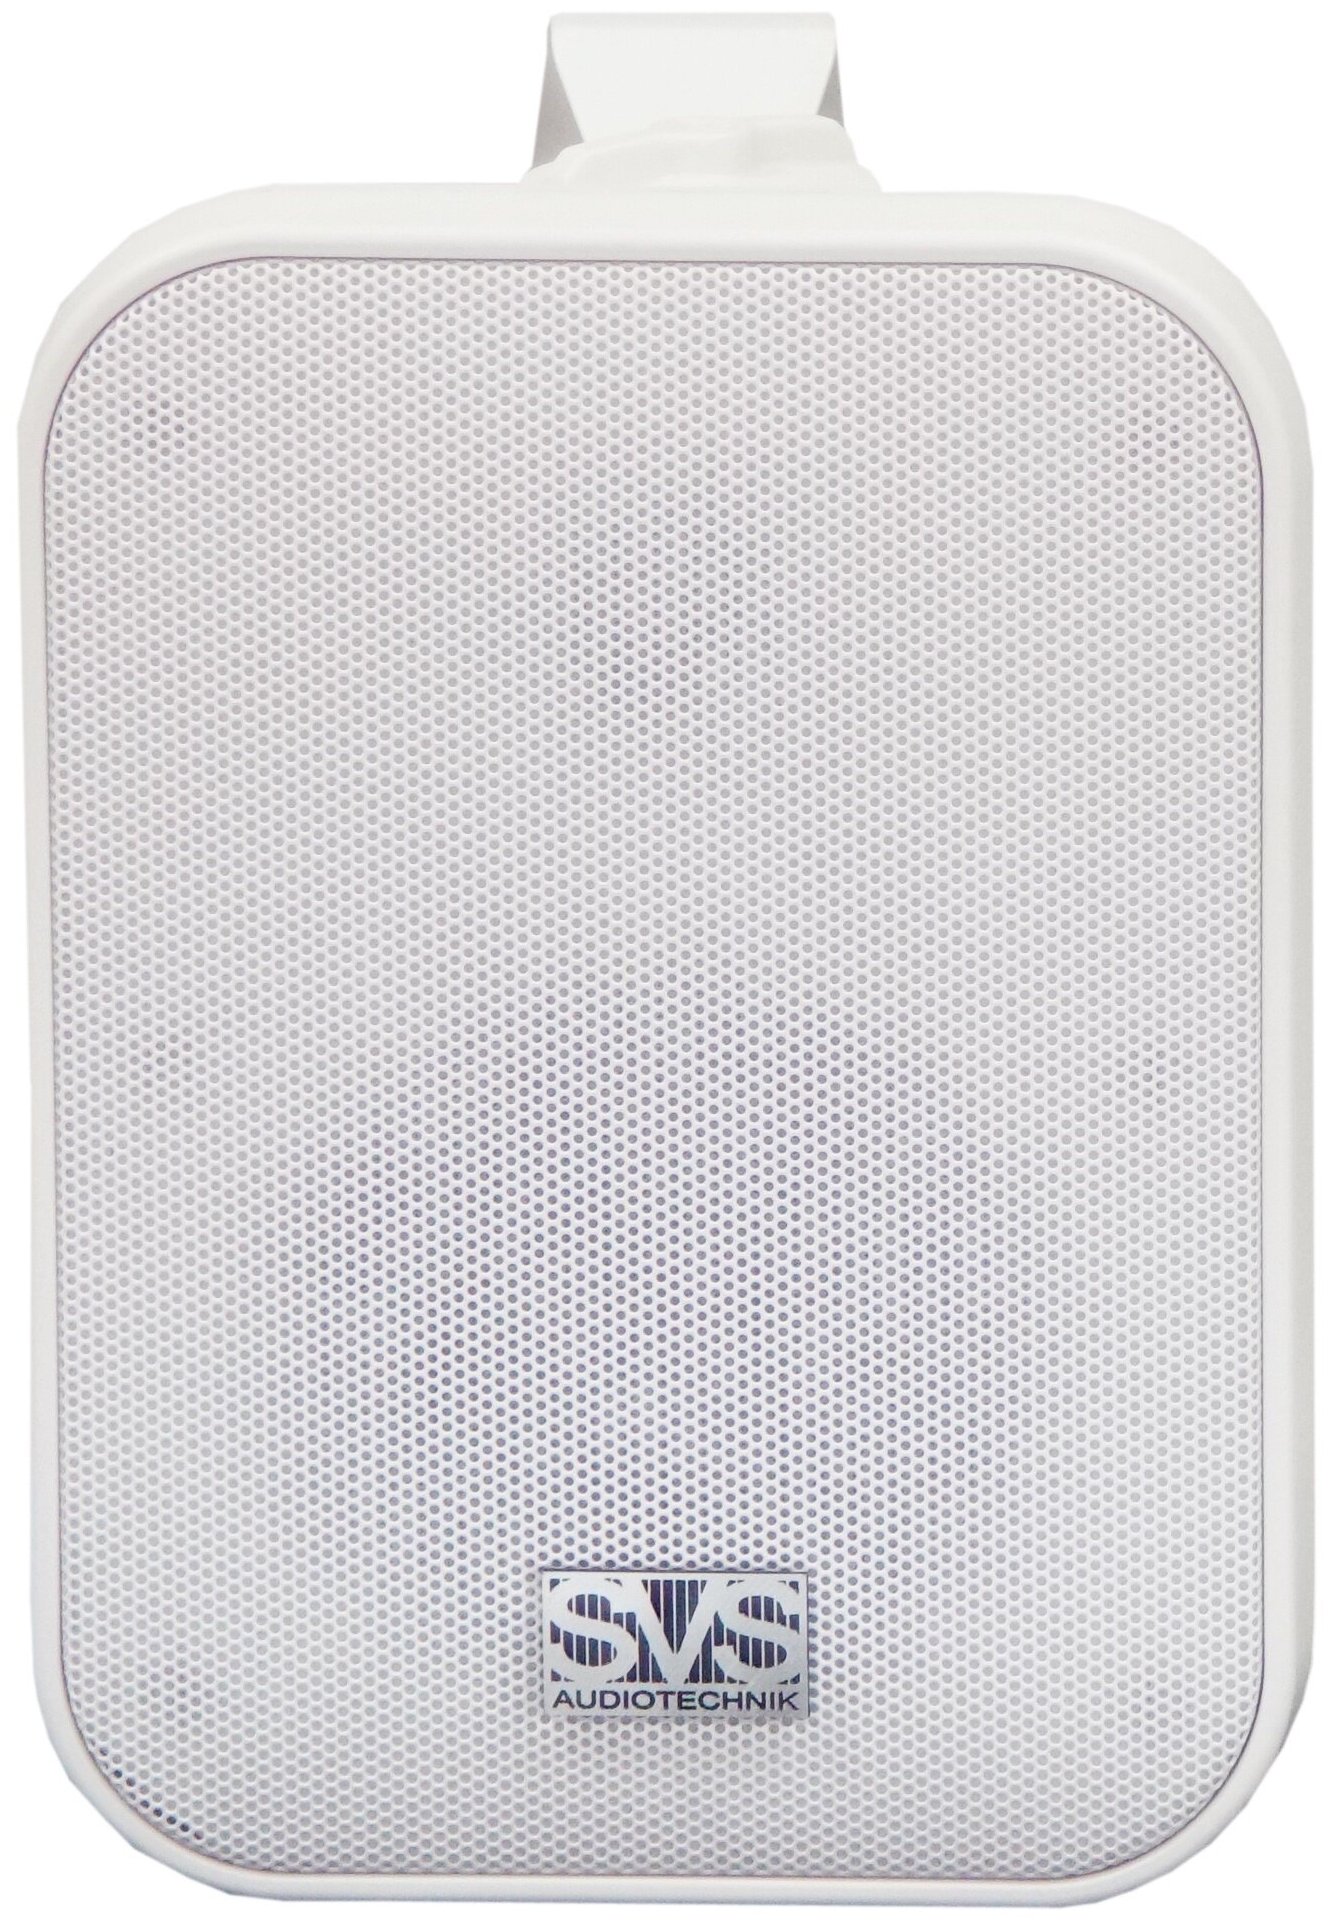 Громкоговоритель настенный (белый) SVS Audiotechnik WSP-40 White